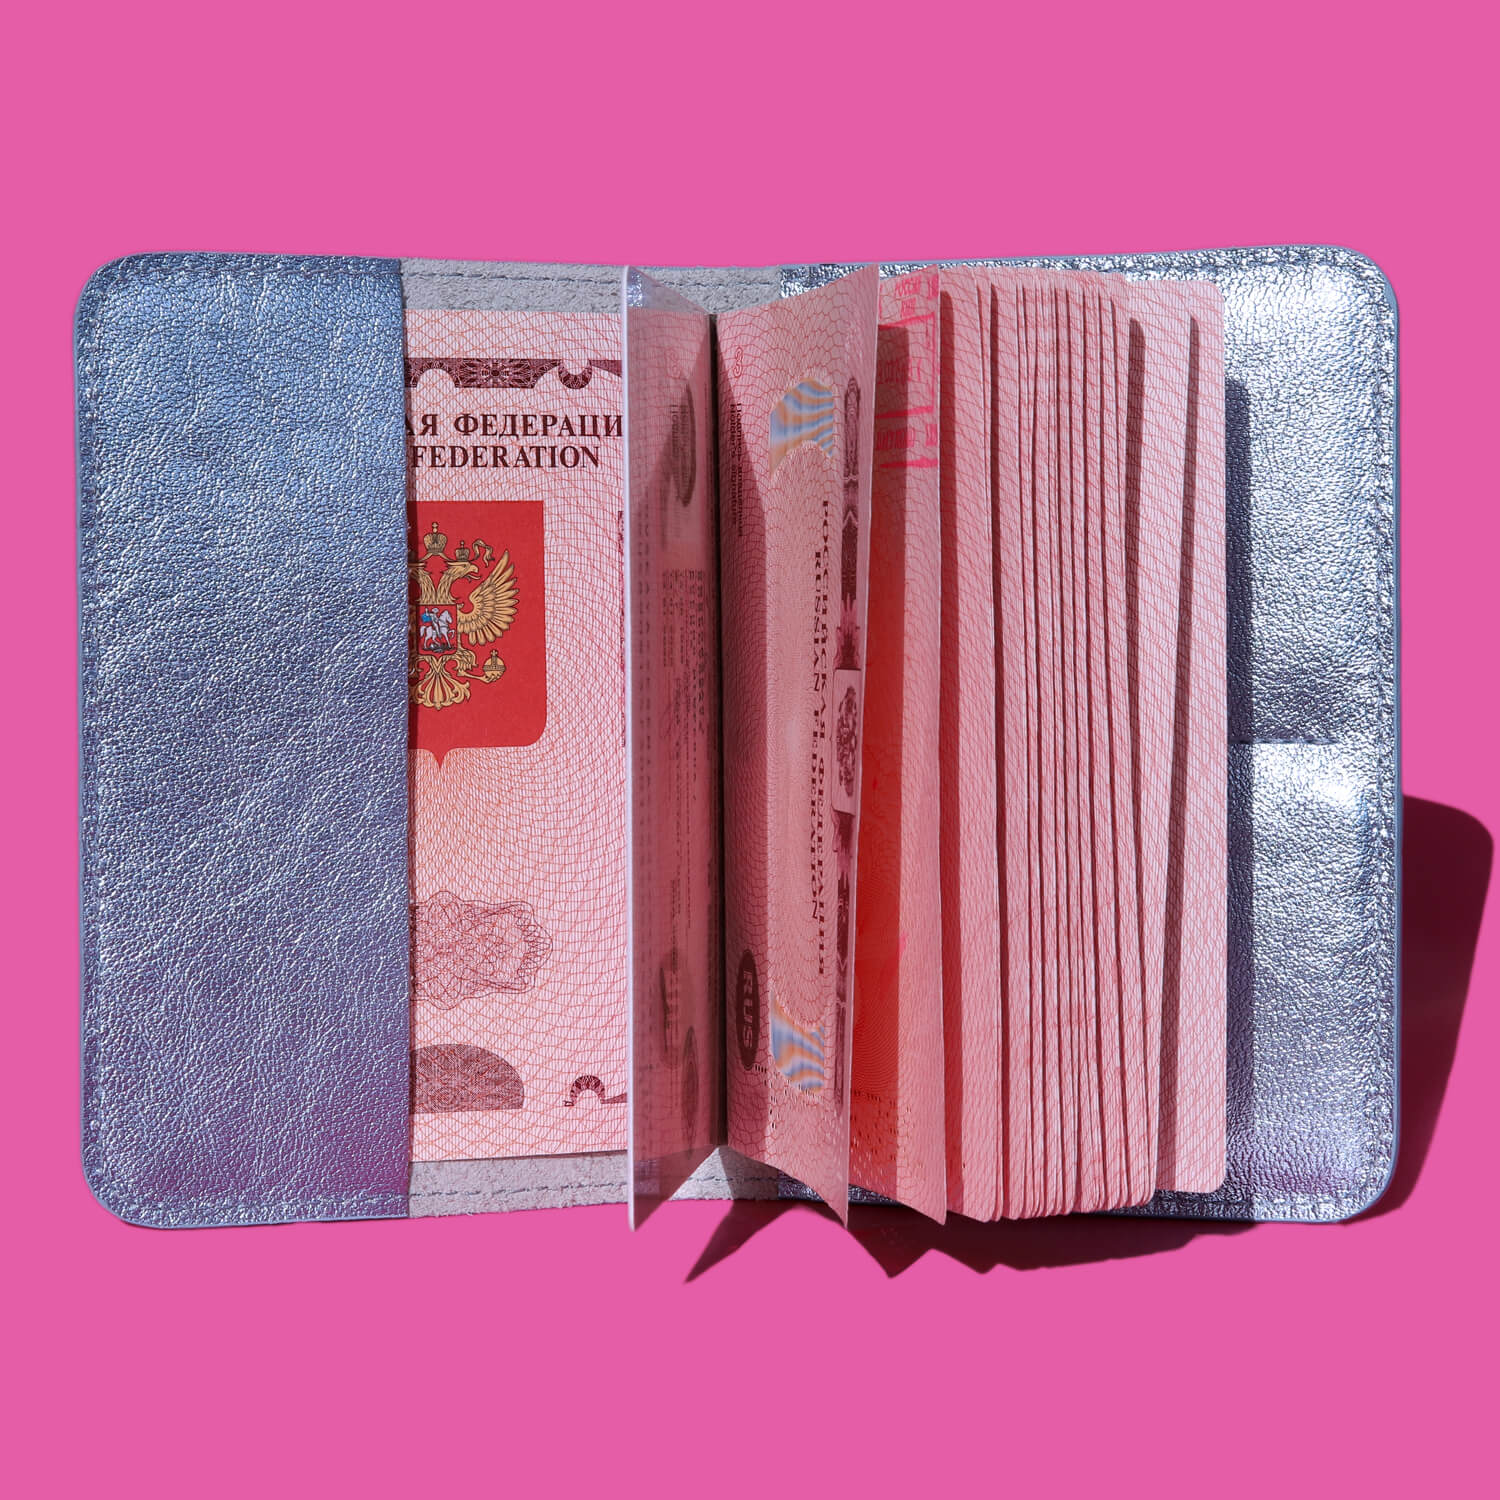 Металлизированная обложка для паспорта, цвет Голубой, фото 2